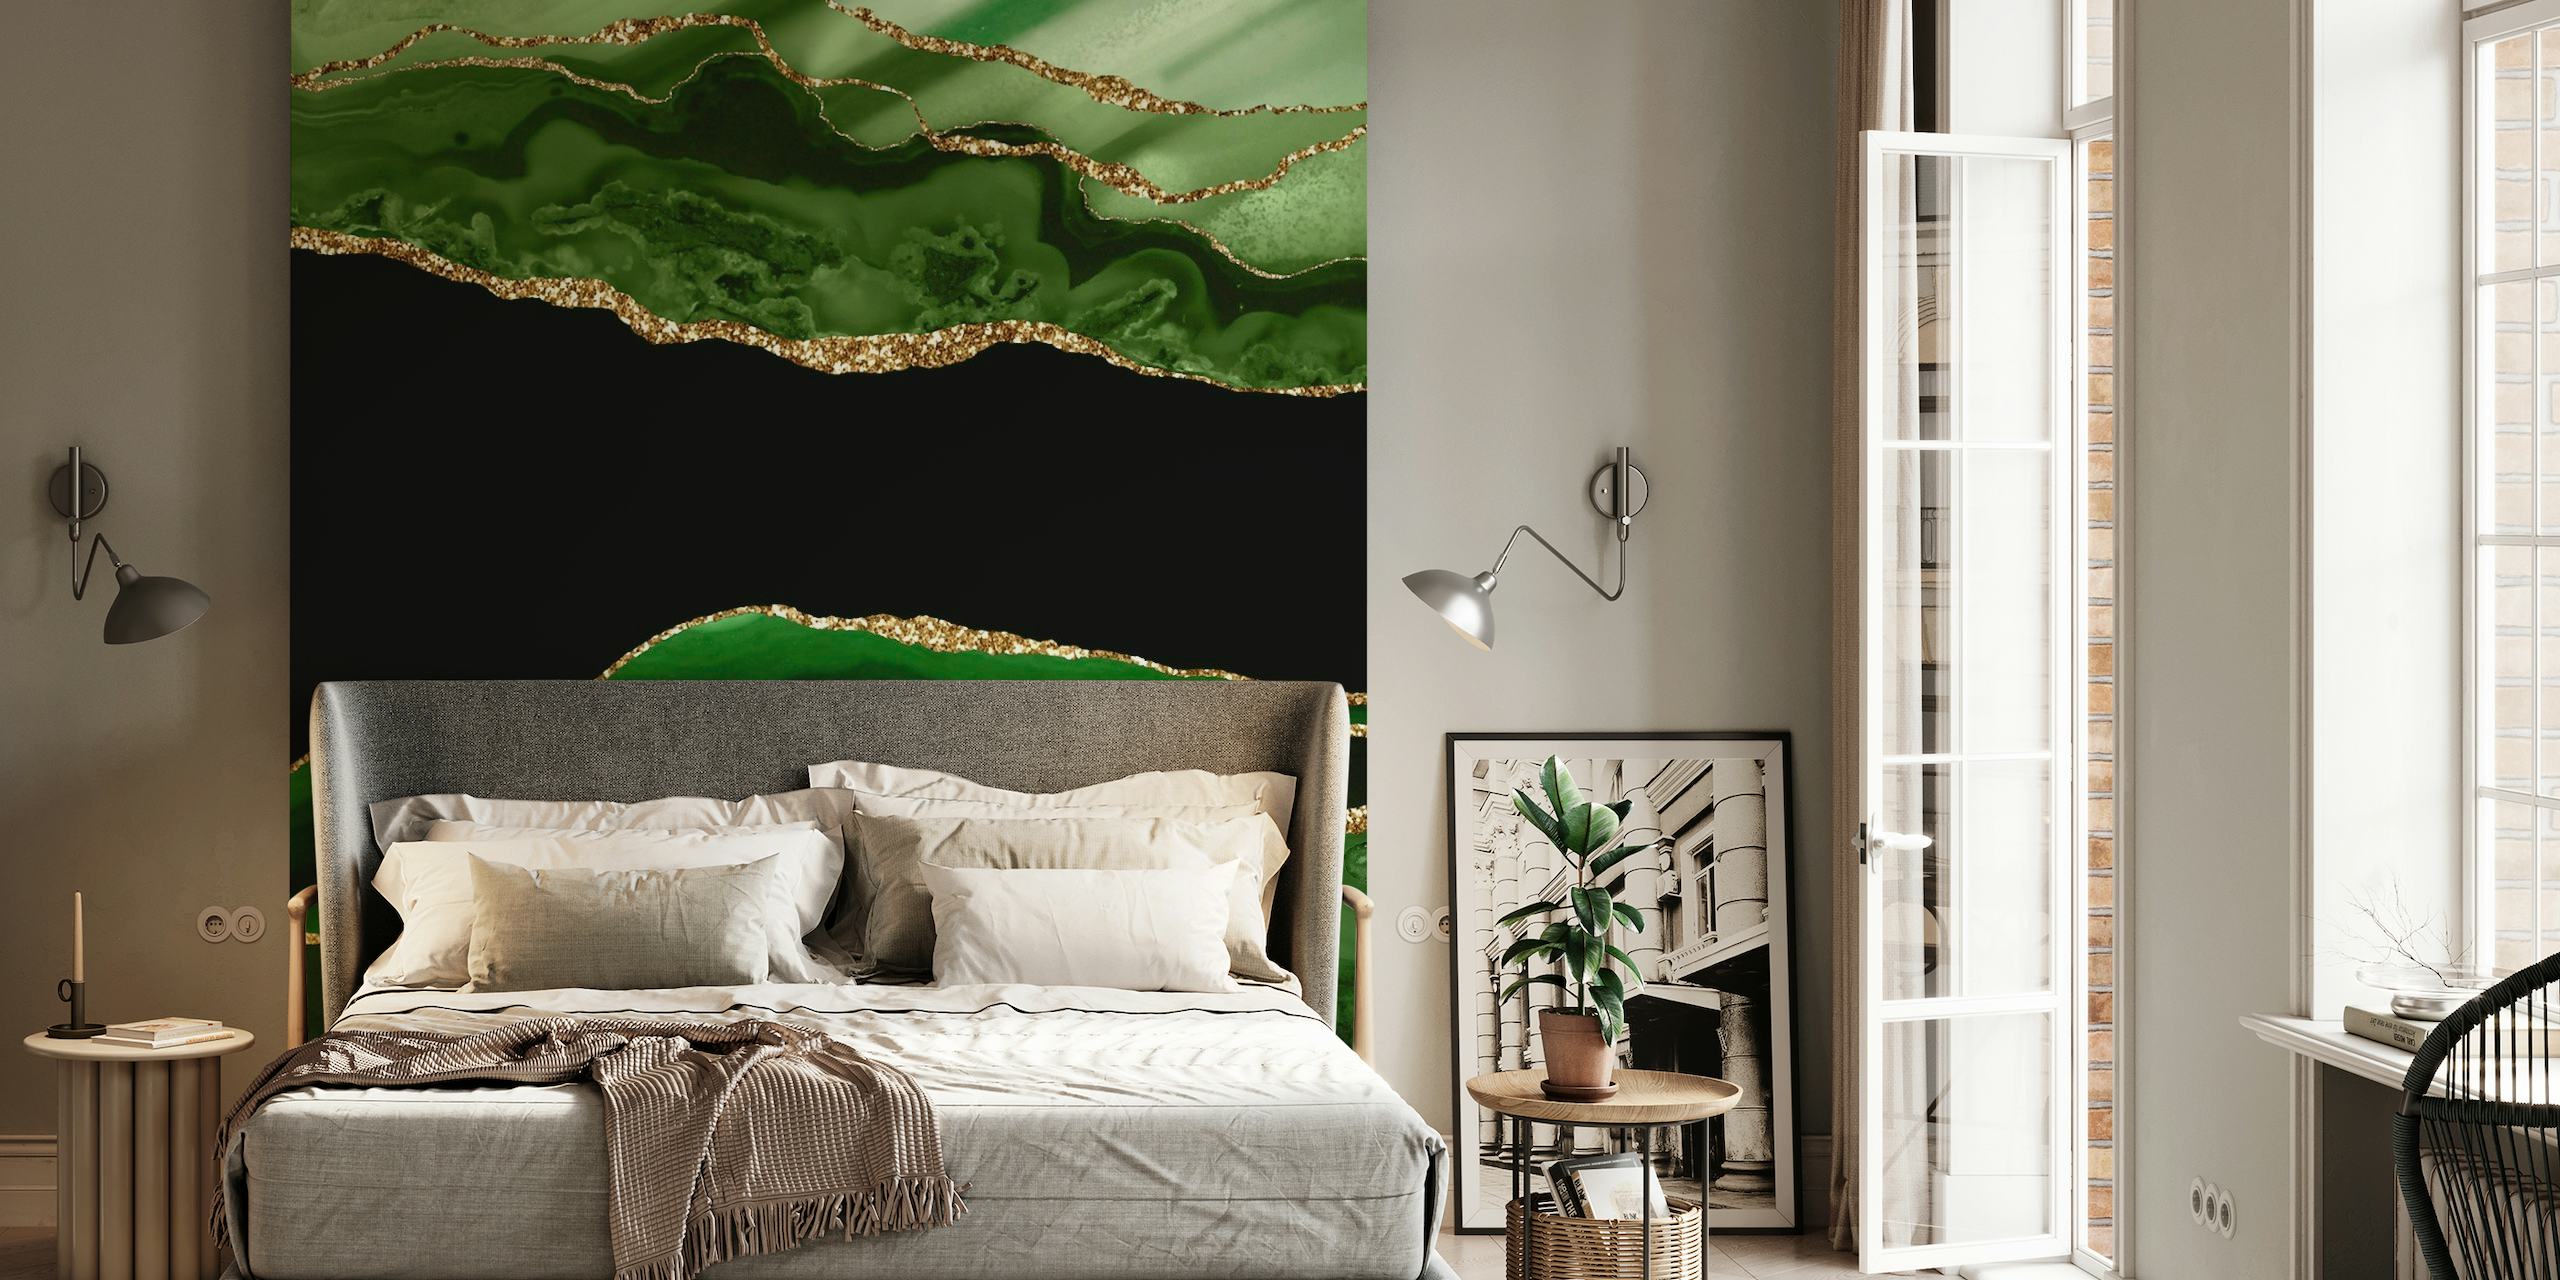 Papier peint mural en marbre sirène vert émeraude avec des tons verts riches avec des accents dorés